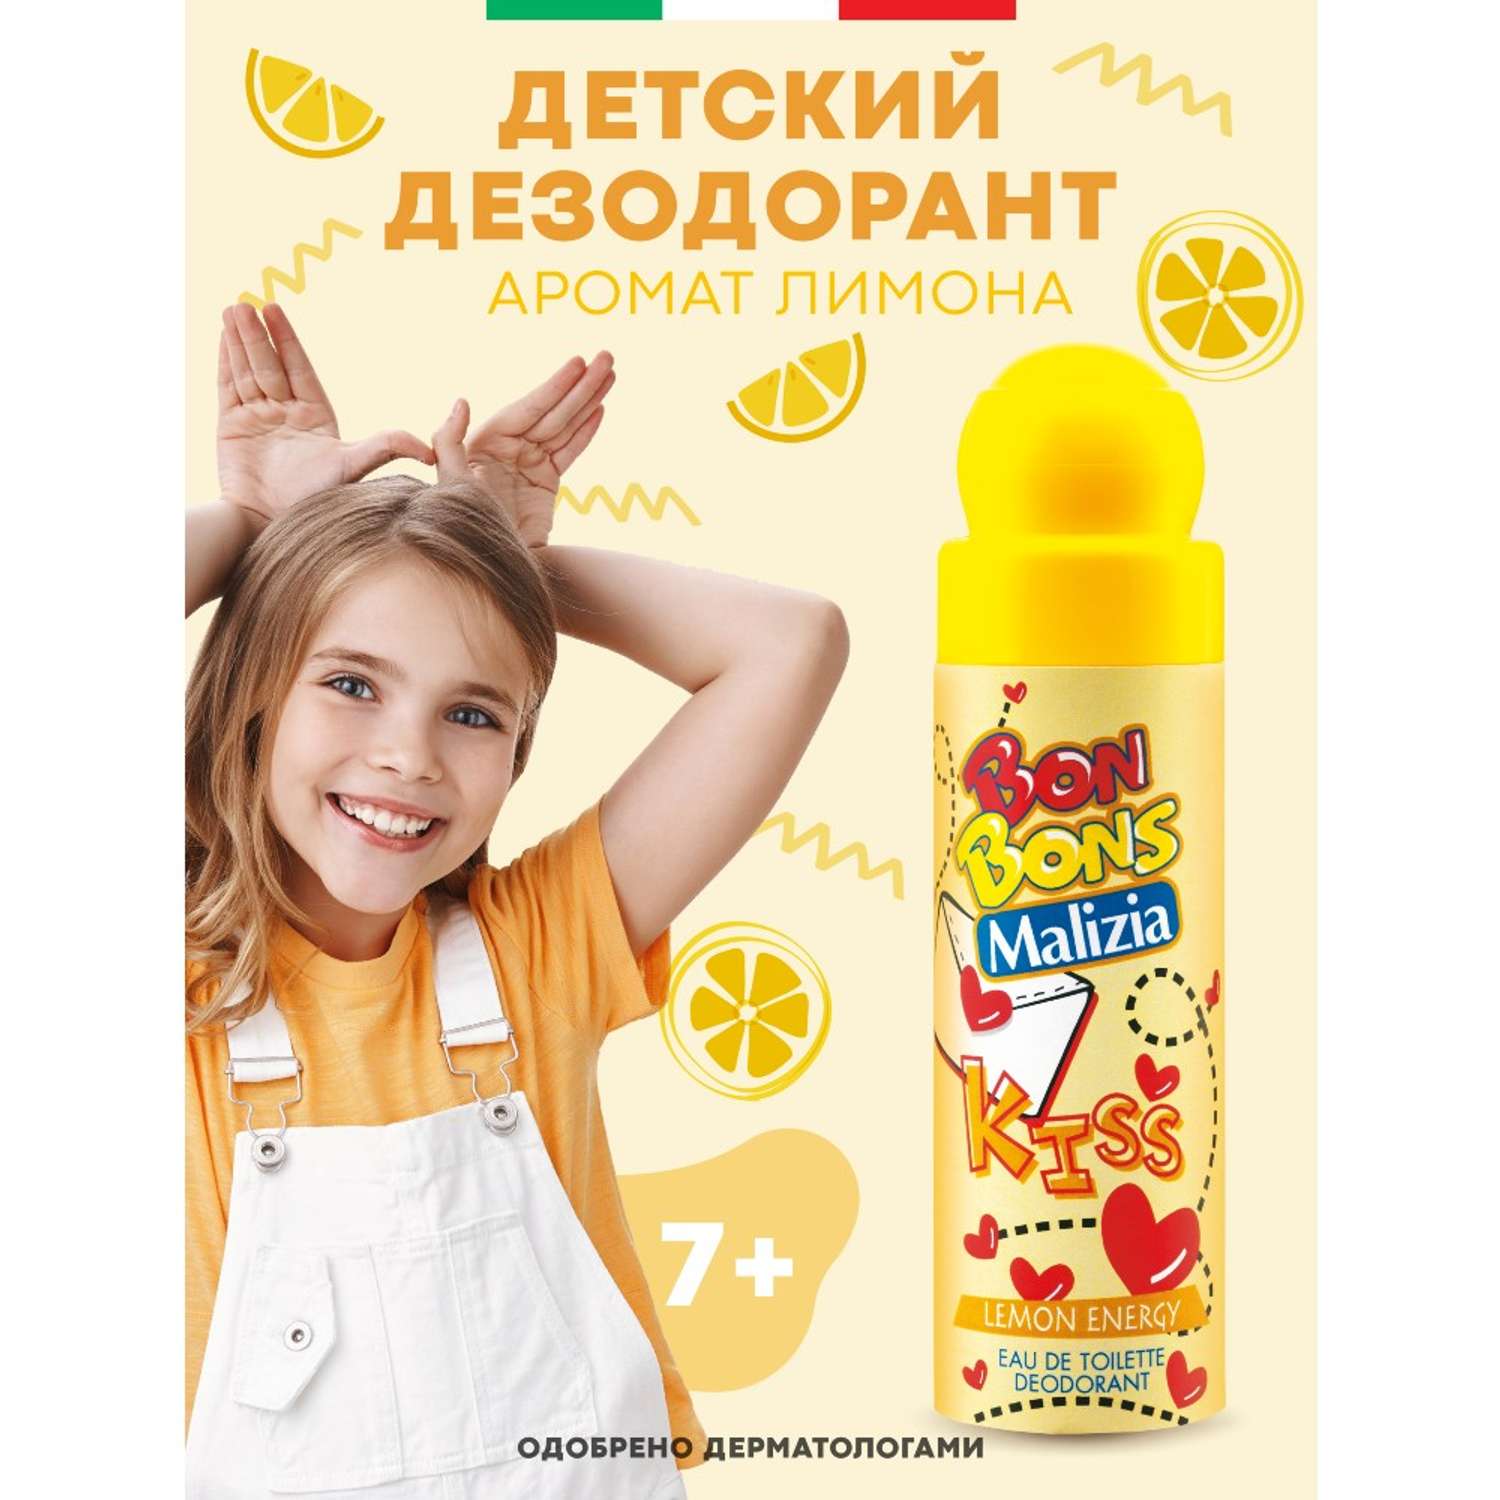 Дезодорант для тела Malizia Дезодорант Bonbons Lemon Energy 75 мл - фото 2